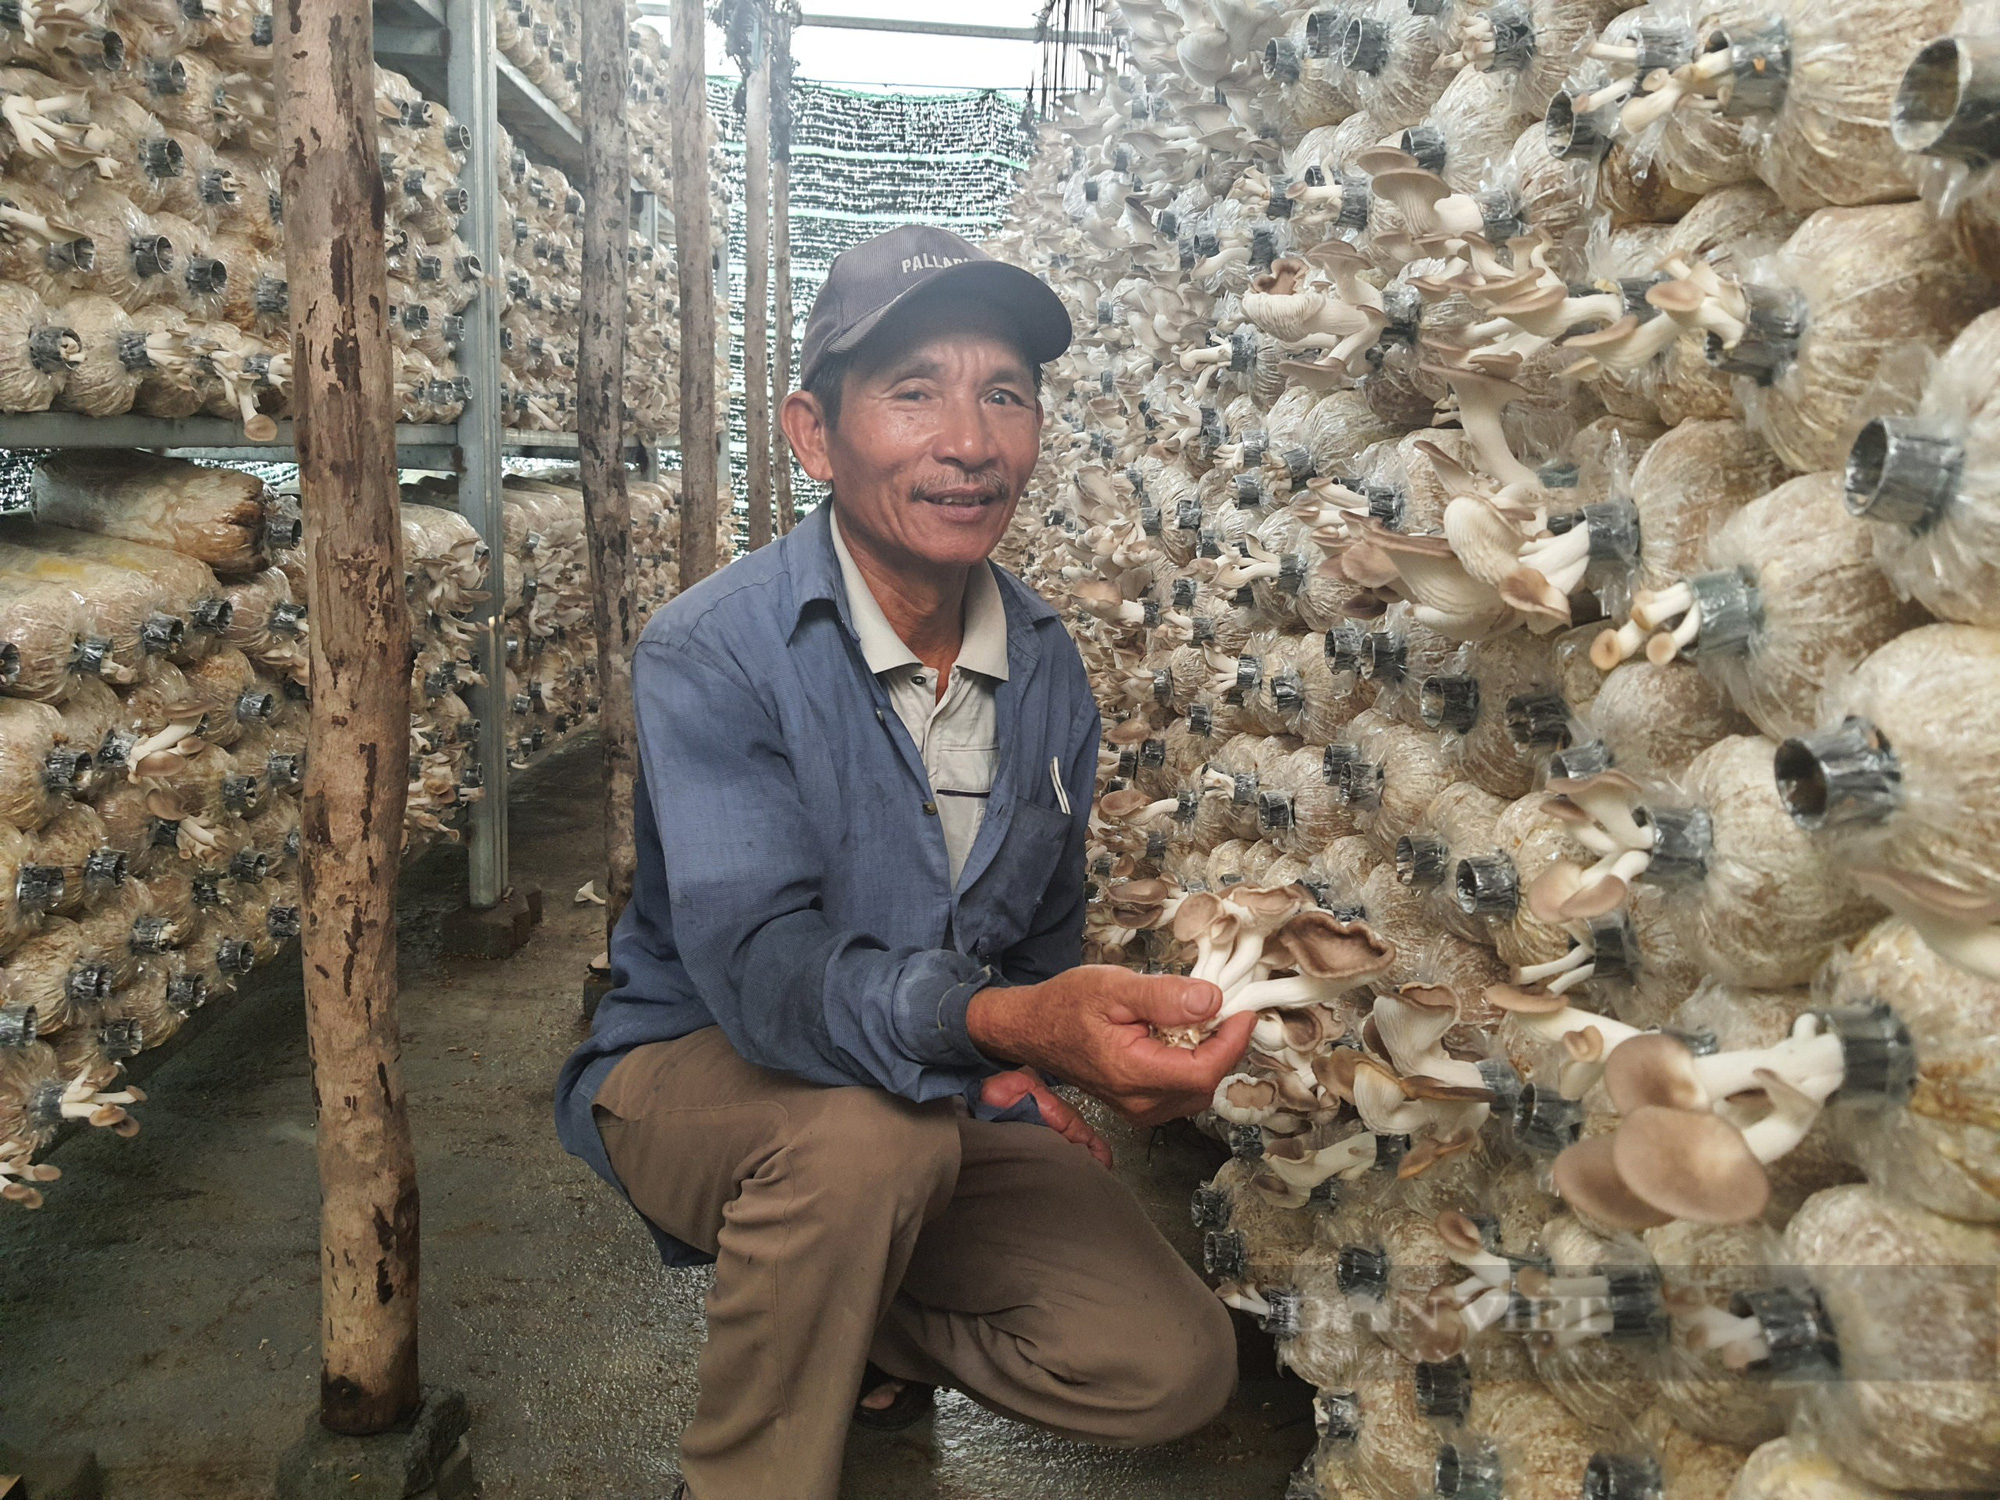 Đà Nẵng: Nông dân U70 có cuộc sống an nhàn nhờ mô hình trồng nấm bào ngư - Ảnh 1.